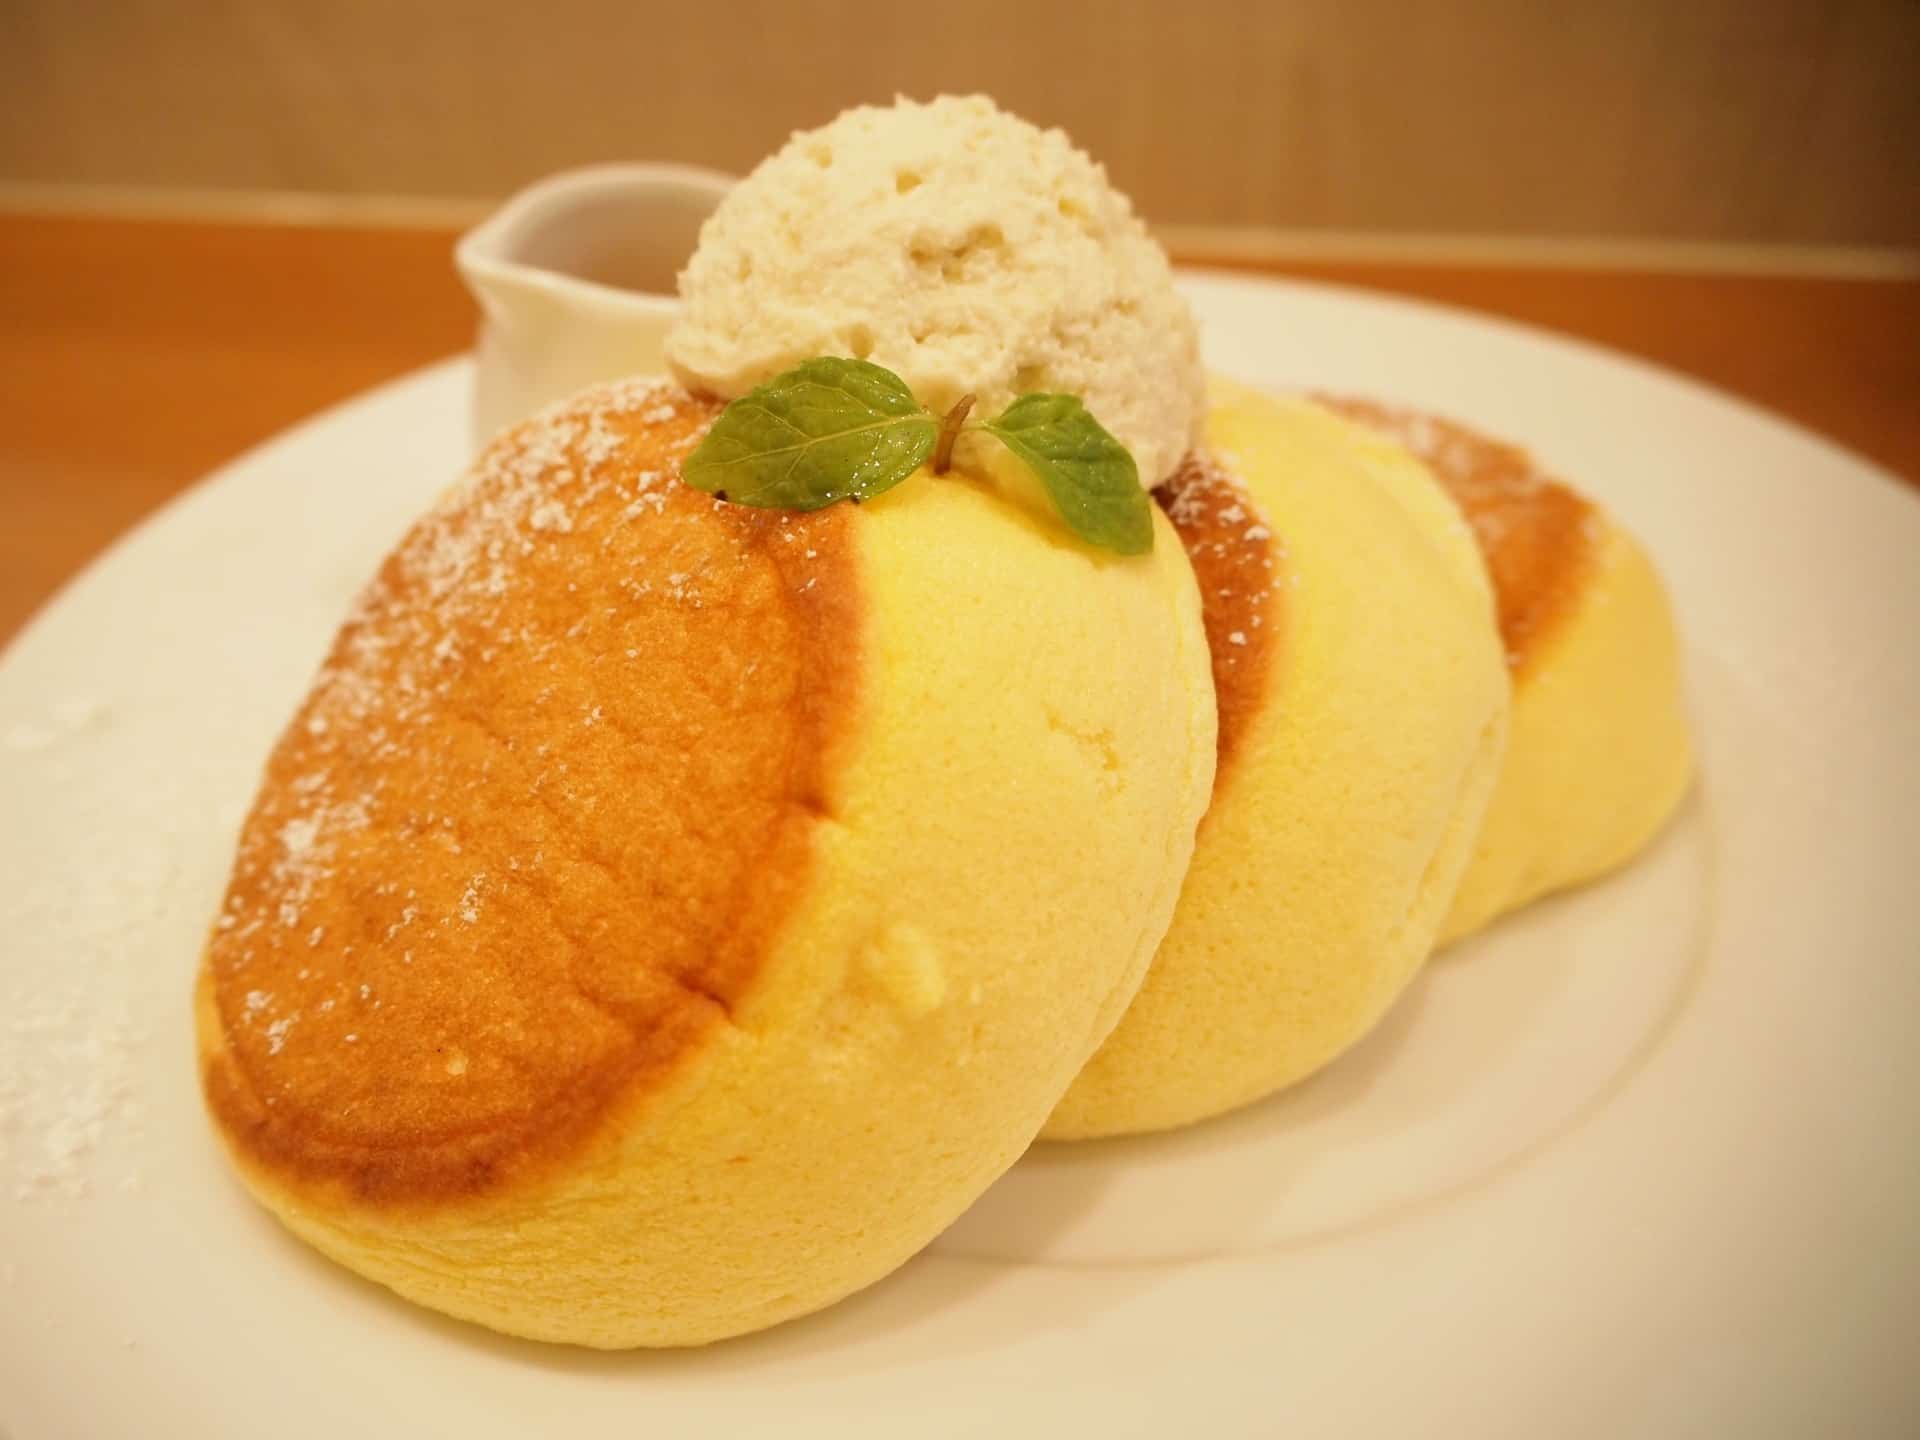 幸せのパンケーキ神戸店 三宮にも ふわふわでとろける食感はやみつき